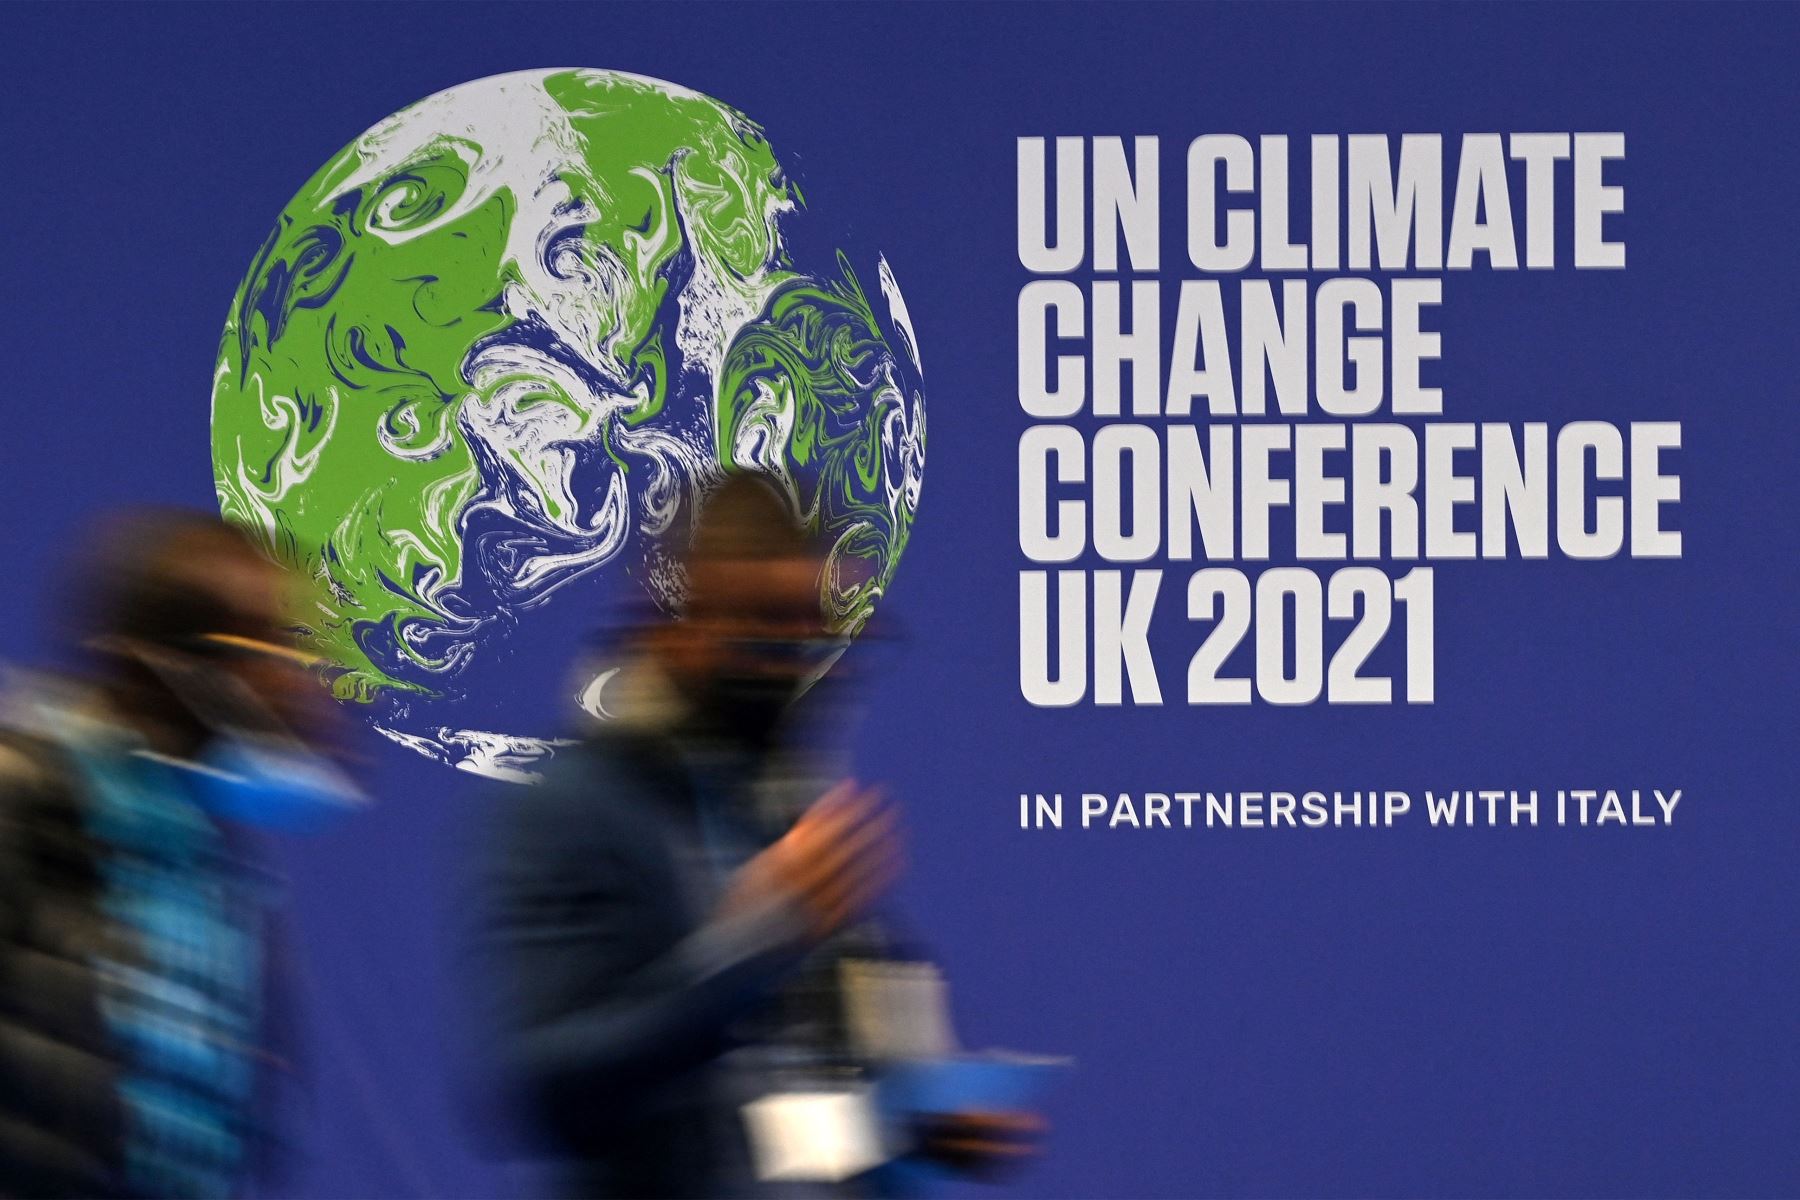 Los delegados pasan un cartel para la Conferencia de las Naciones Unidas sobre el cambio climático en el Reino Unido 2021, durante la cumbre COP26 en Glasgow, Escocia.
Foto: AFP